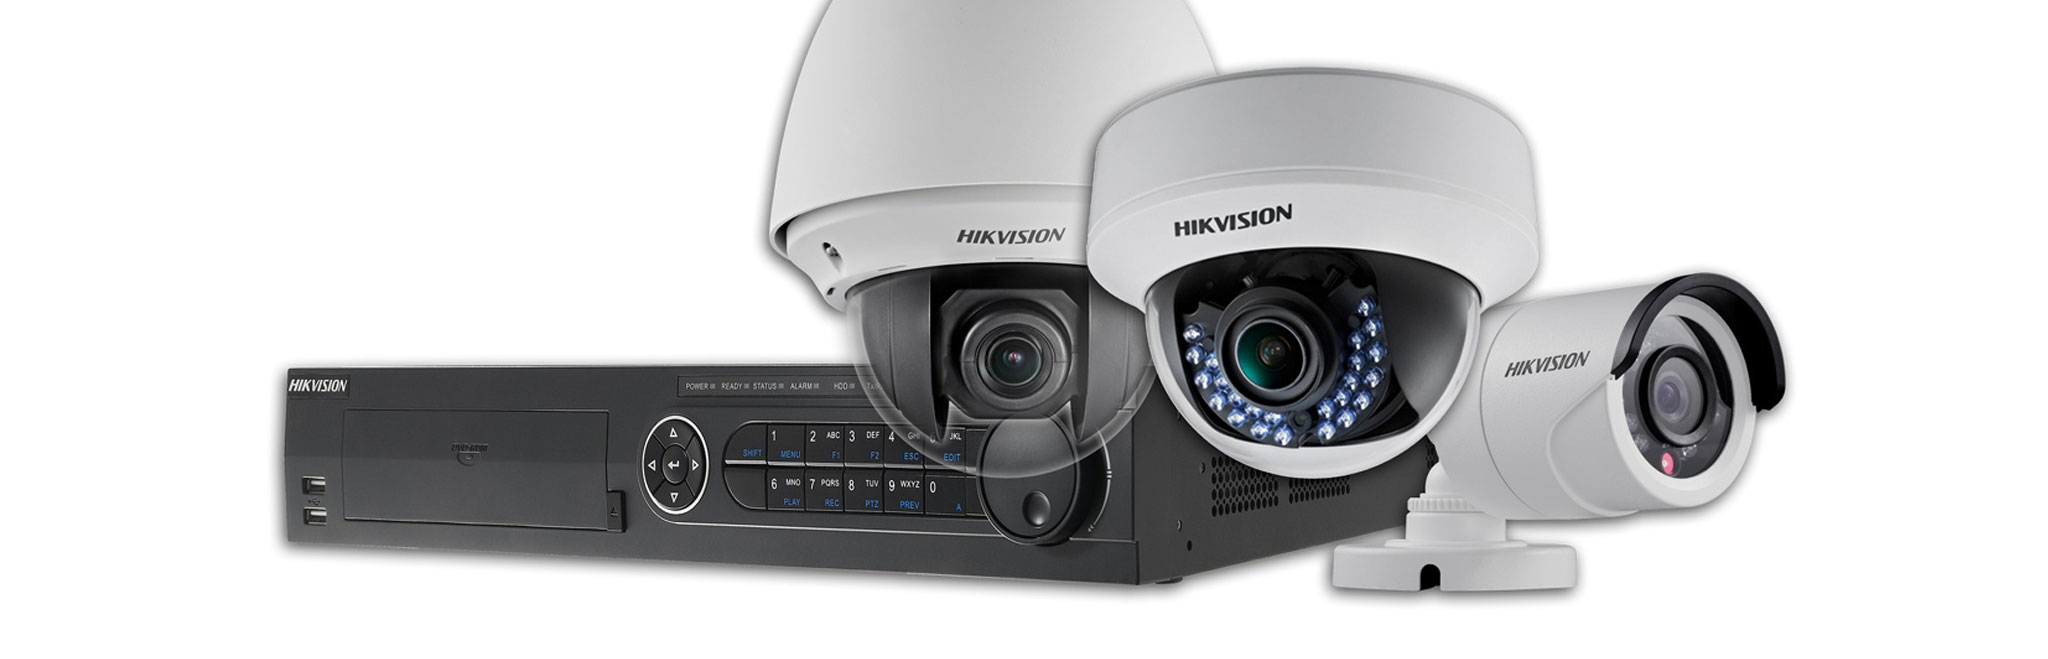 hikvision ip camera dealer in fbd